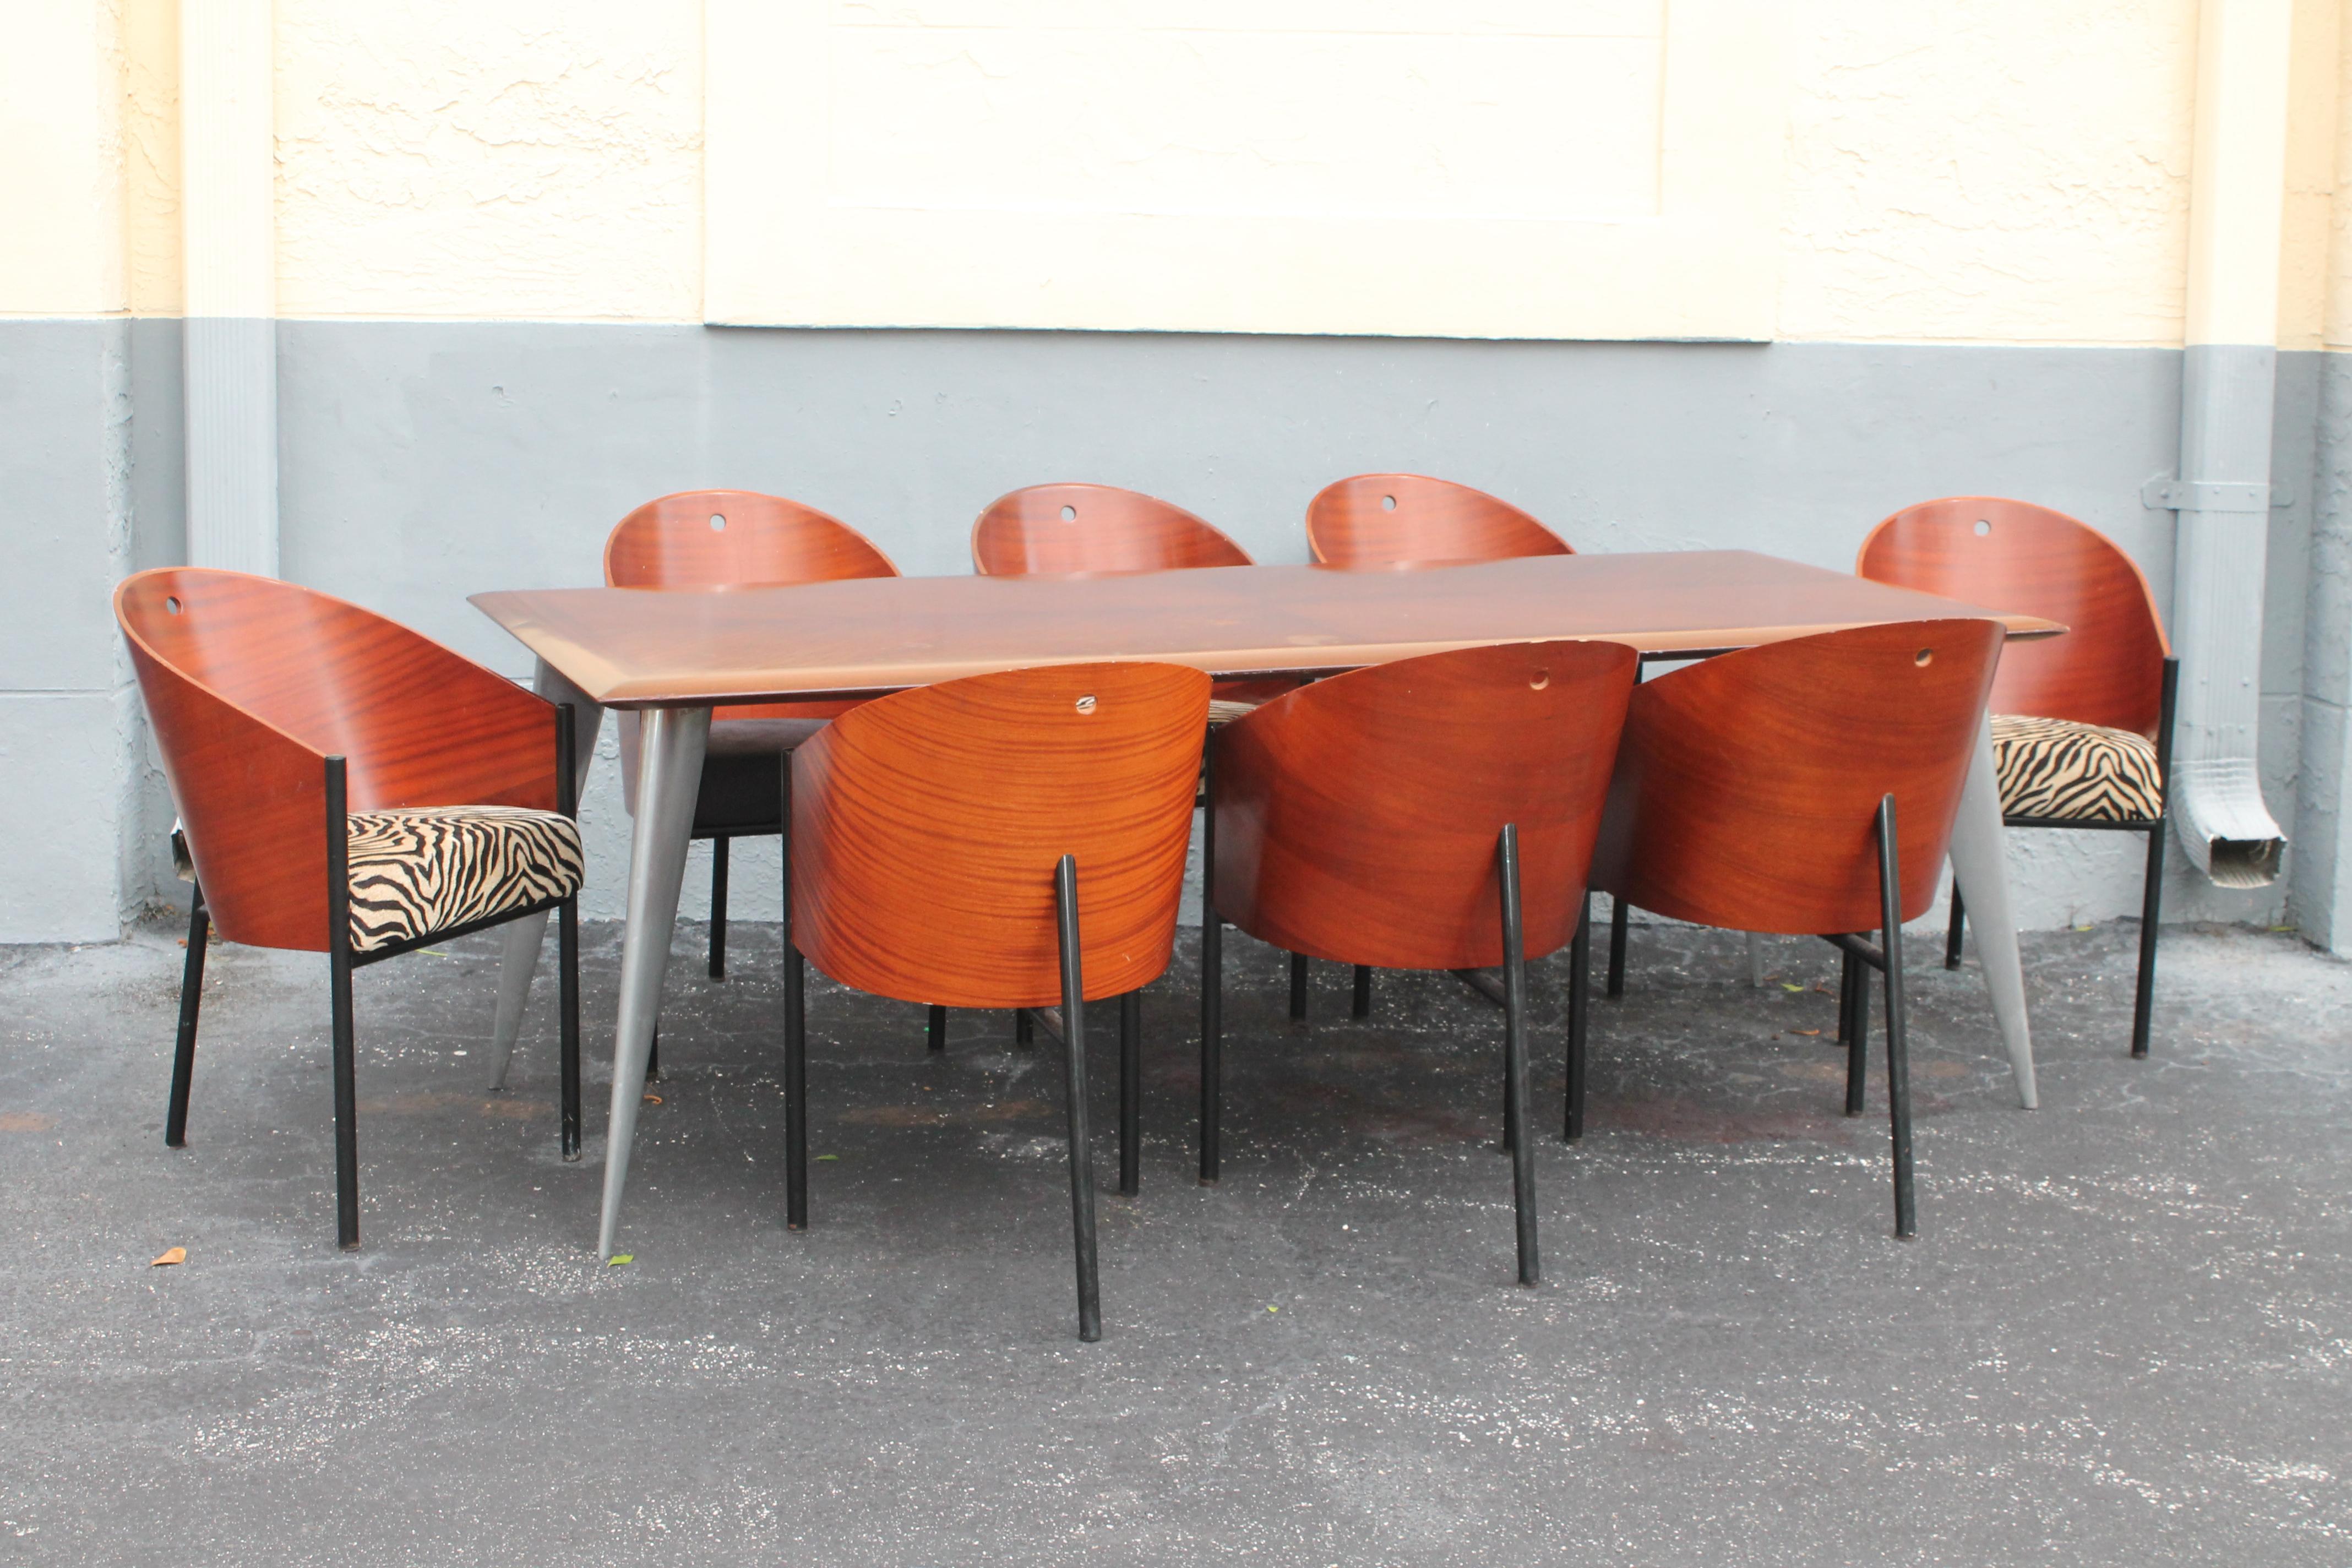 Ensemble de salle à manger 9 pièces d'inspiration Art Déco des années 1980 Signé par le meilleur ! Philippe Starck. 8 chaises et une table de salle à manger sont incluses dans cette vente. Je vais laisser les photos parler d'elles-mêmes, car elles